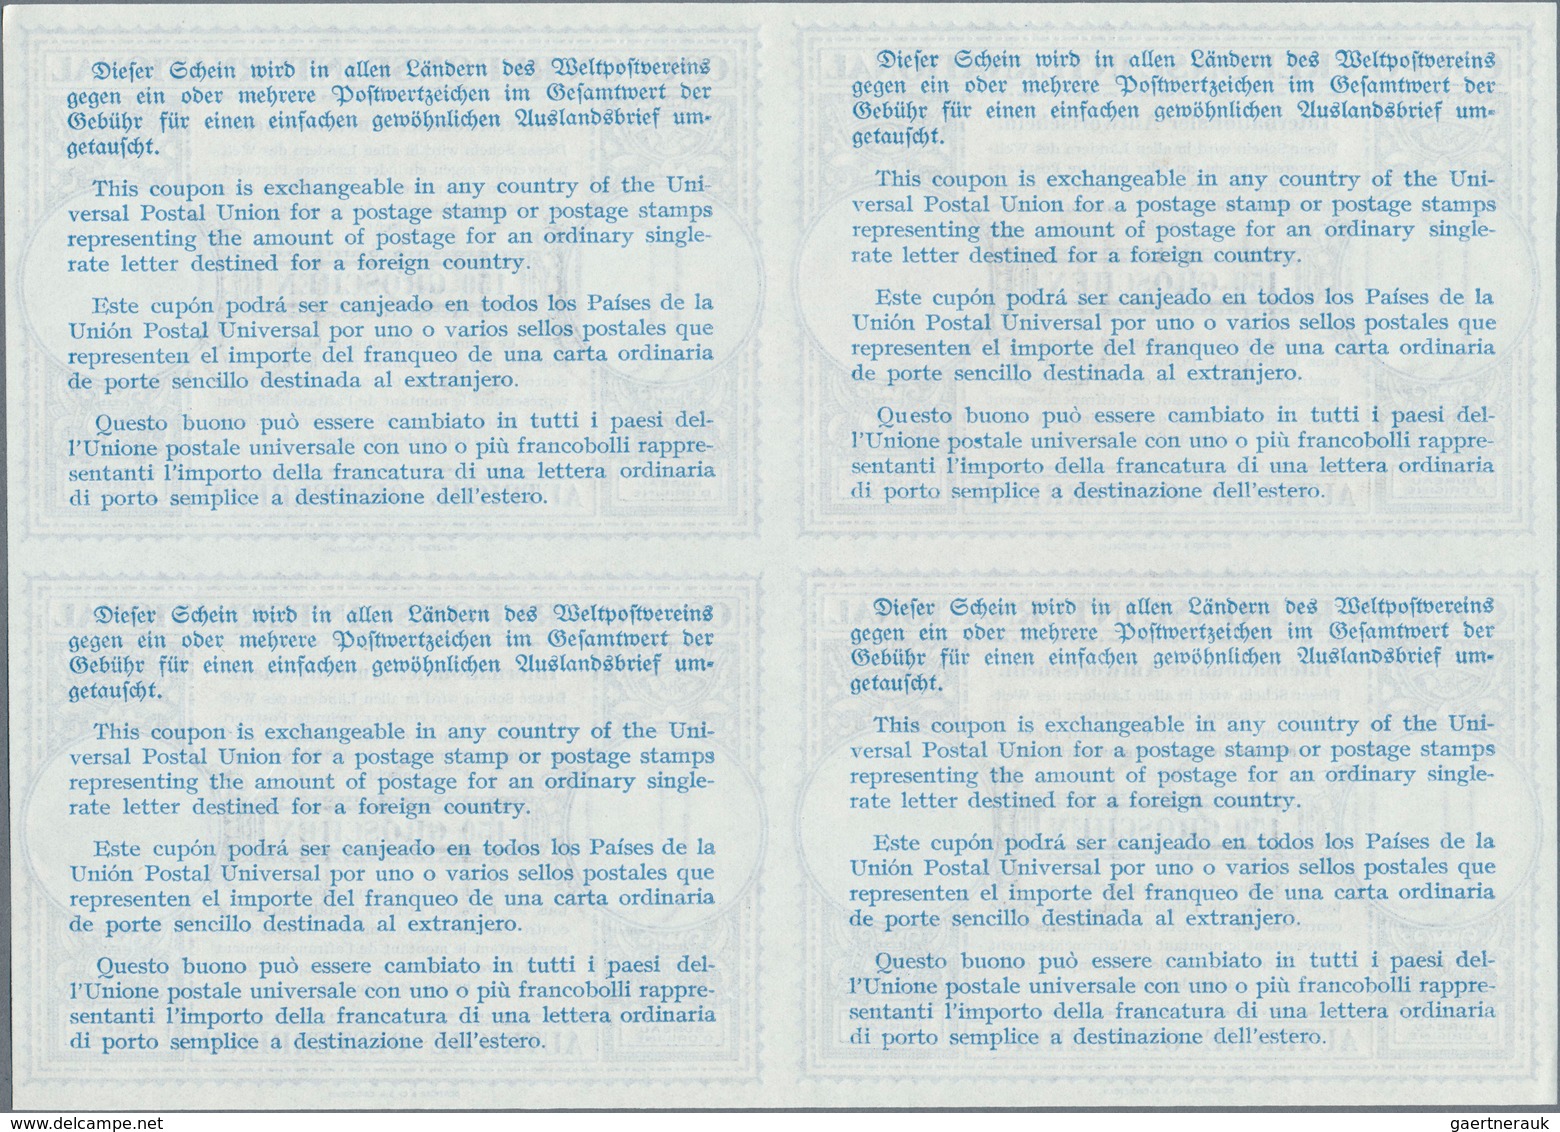 Österreich - Ganzsachen: 1948, Juni. Internationaler Antwortschein "150 Groschen" (London-Muster) In - Other & Unclassified